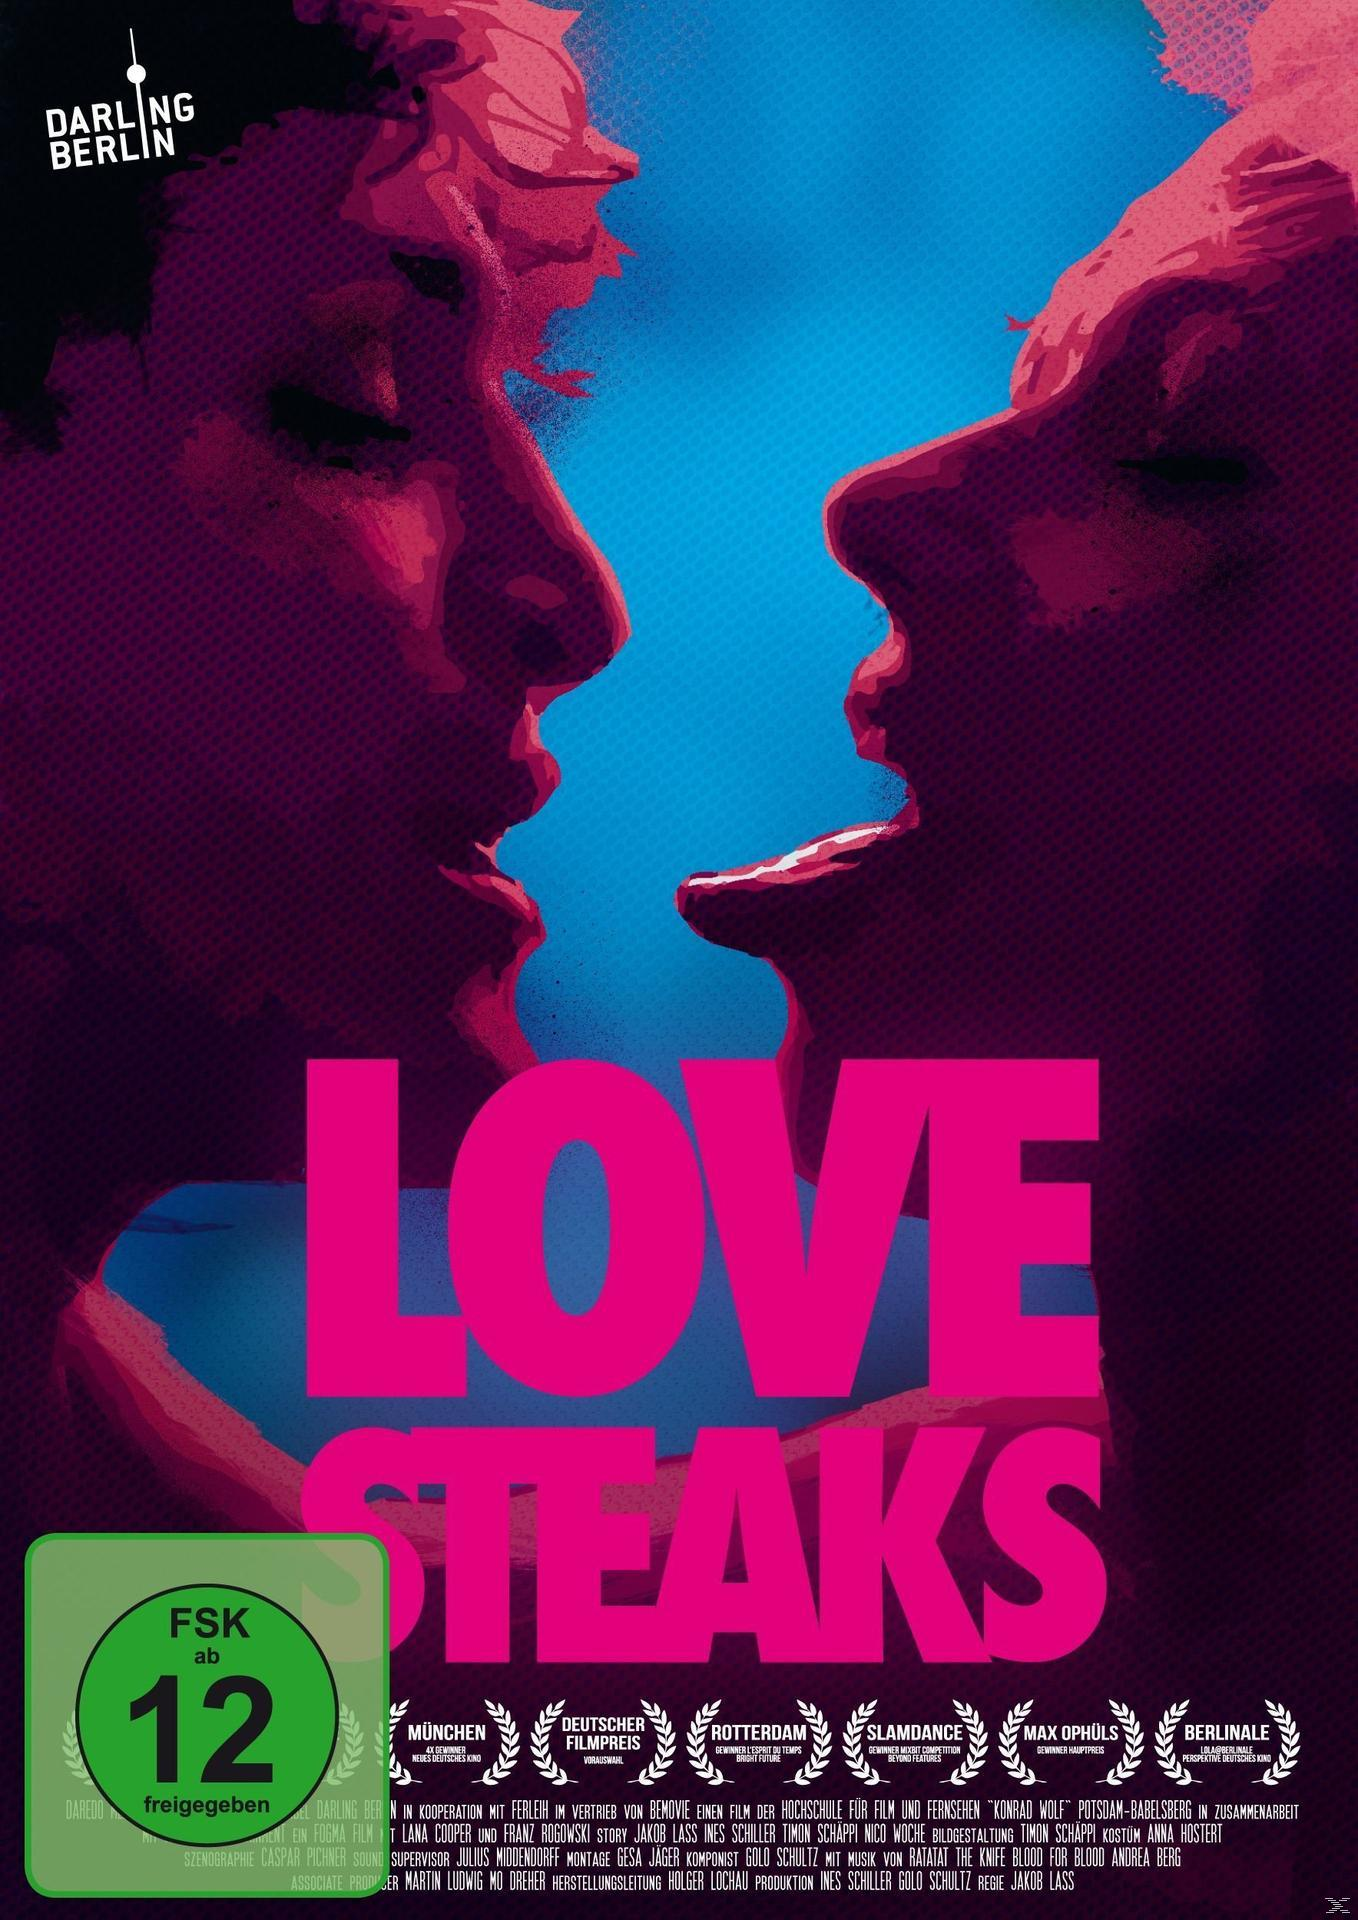 DVD STEAKS LOVE